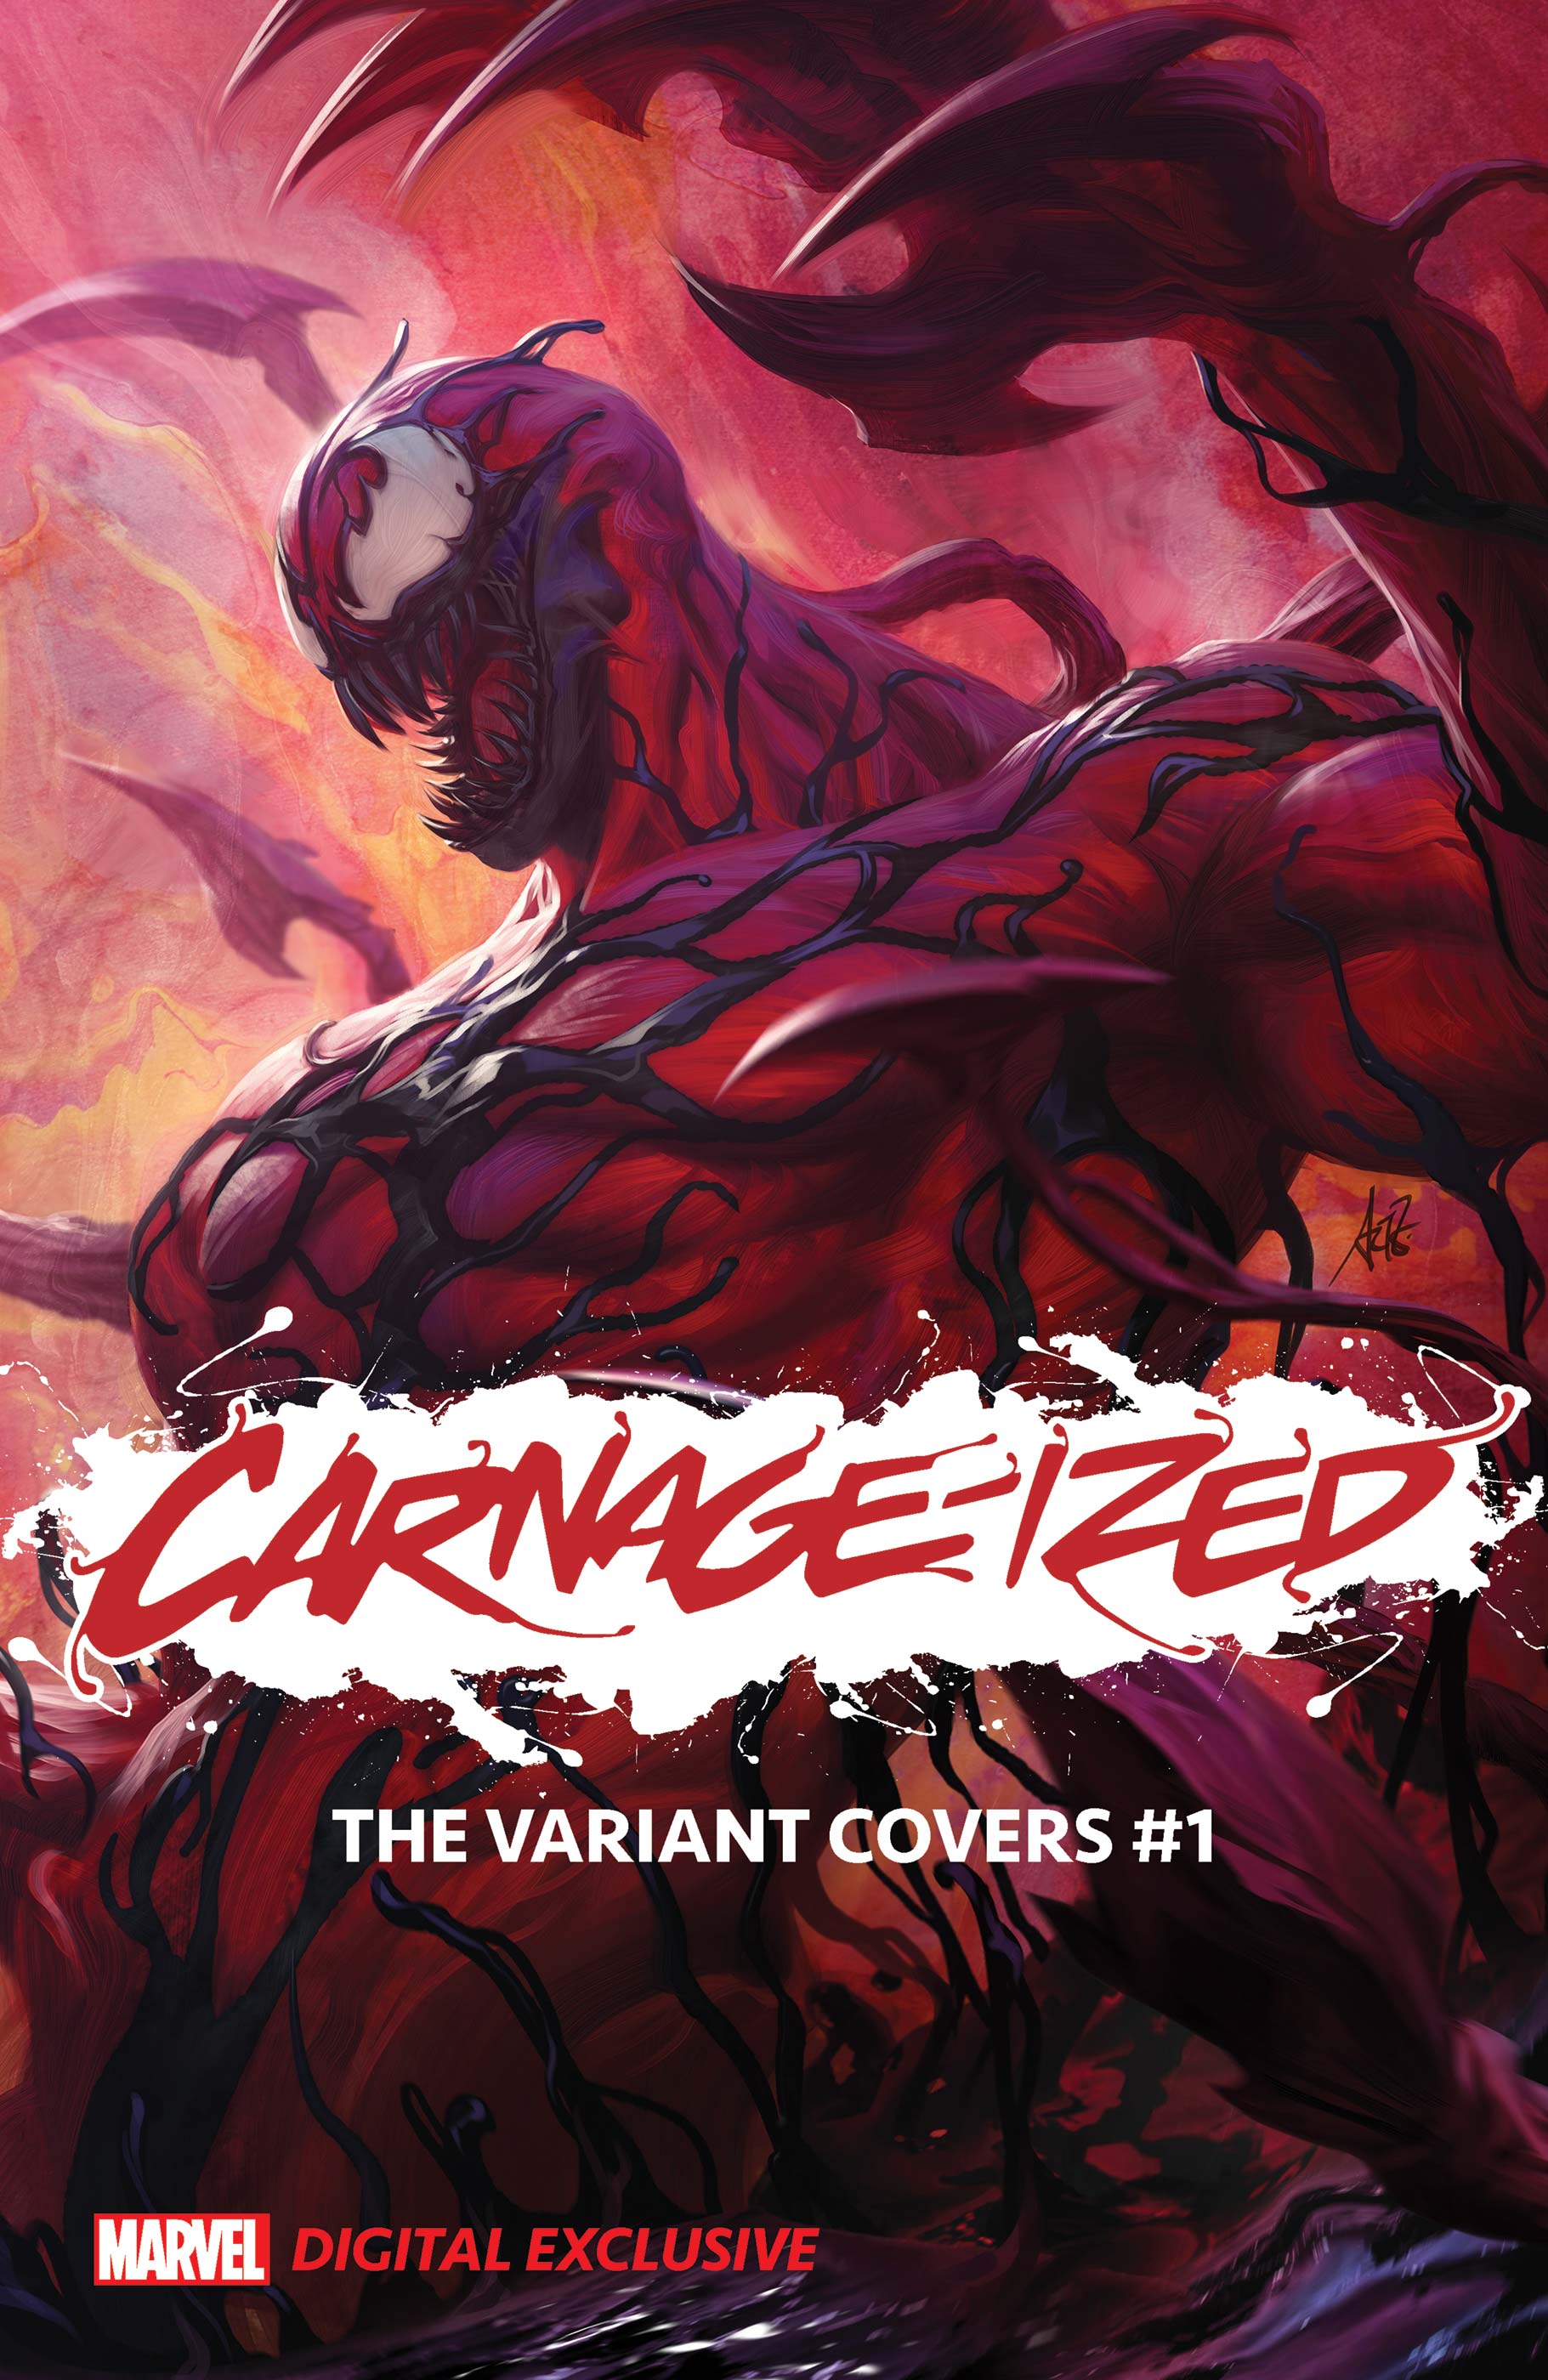 Carnage-ized Variants (2020) #1